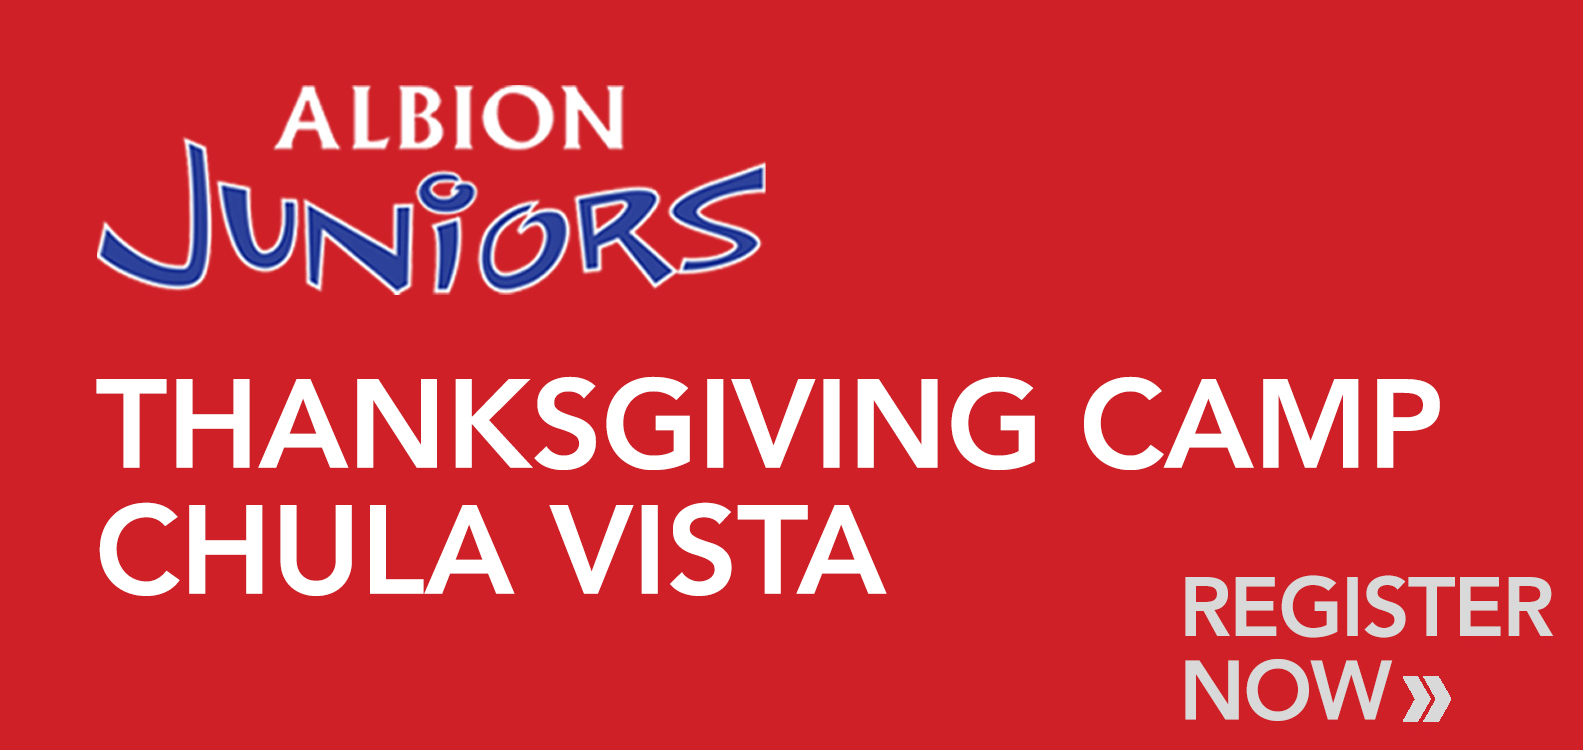 Juniors Thanksgiving Camps - CV